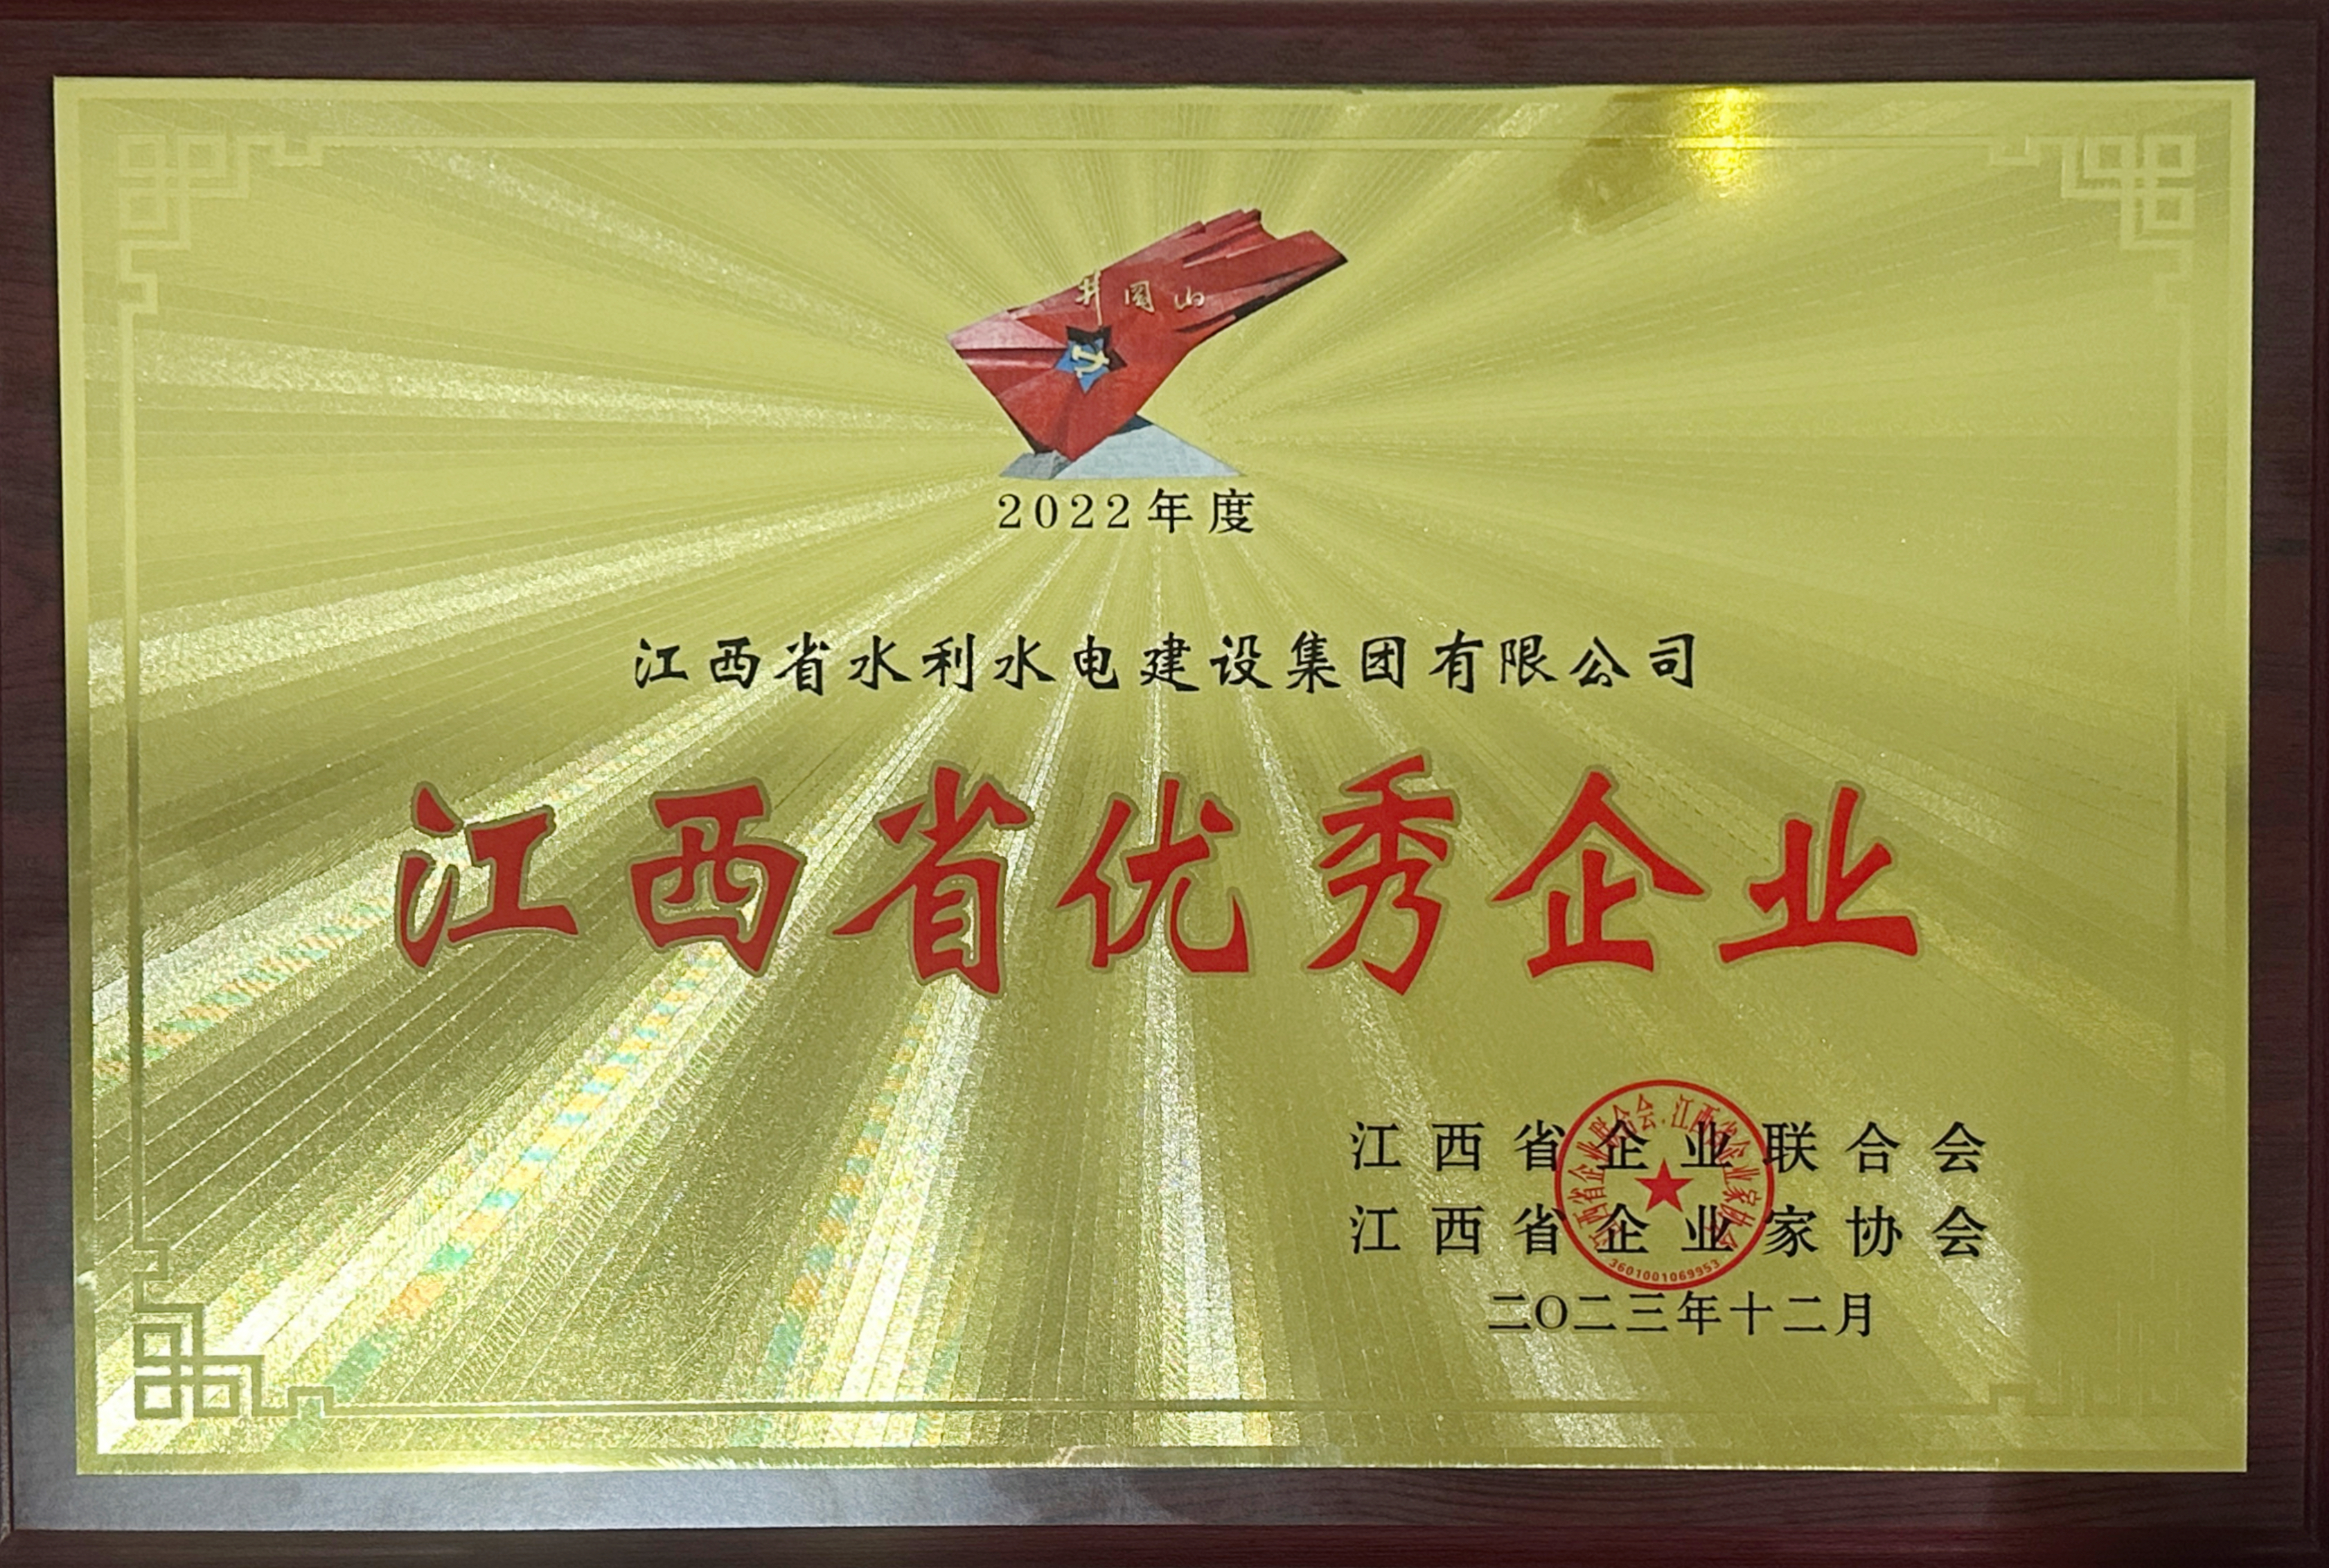 集團連續二十三年獲評江西省優秀企業榮譽稱號